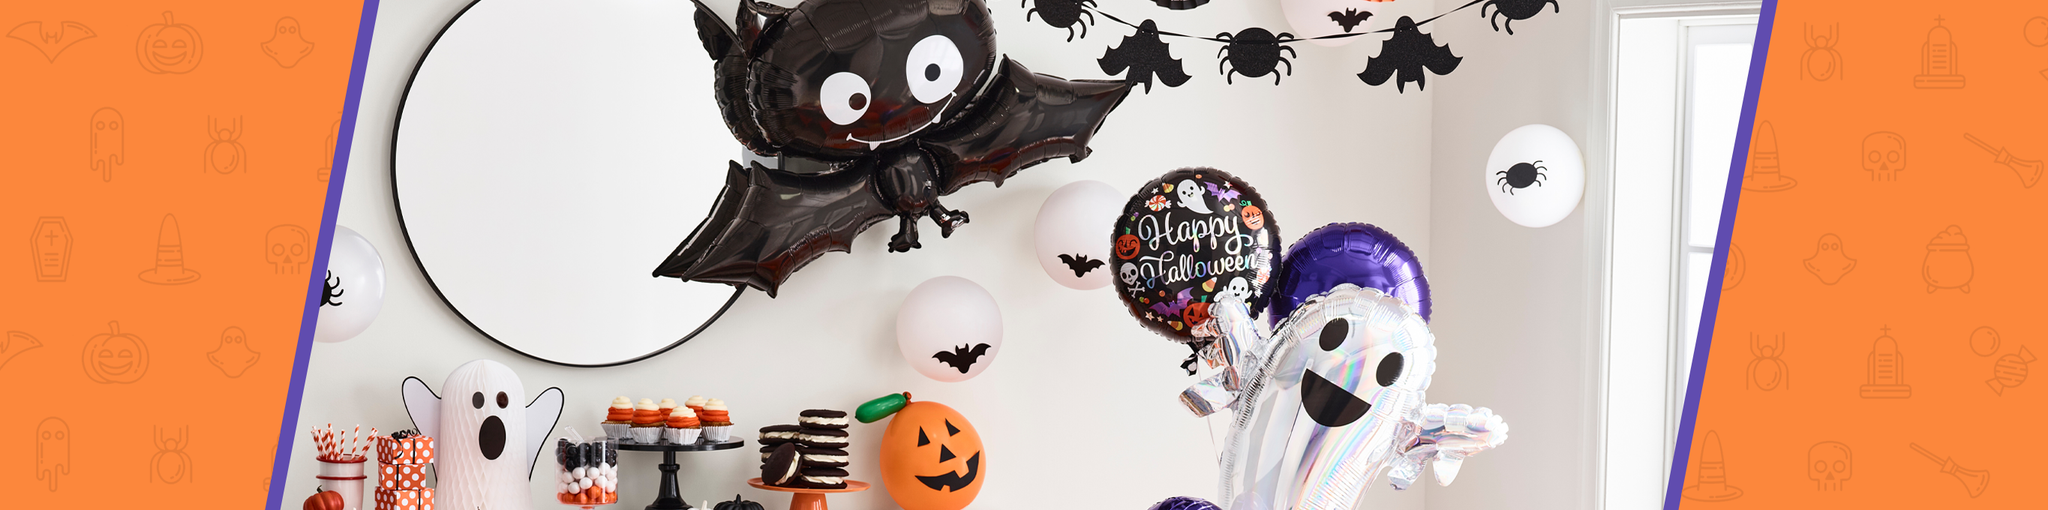 Halloween Balloon Decoration Ideas